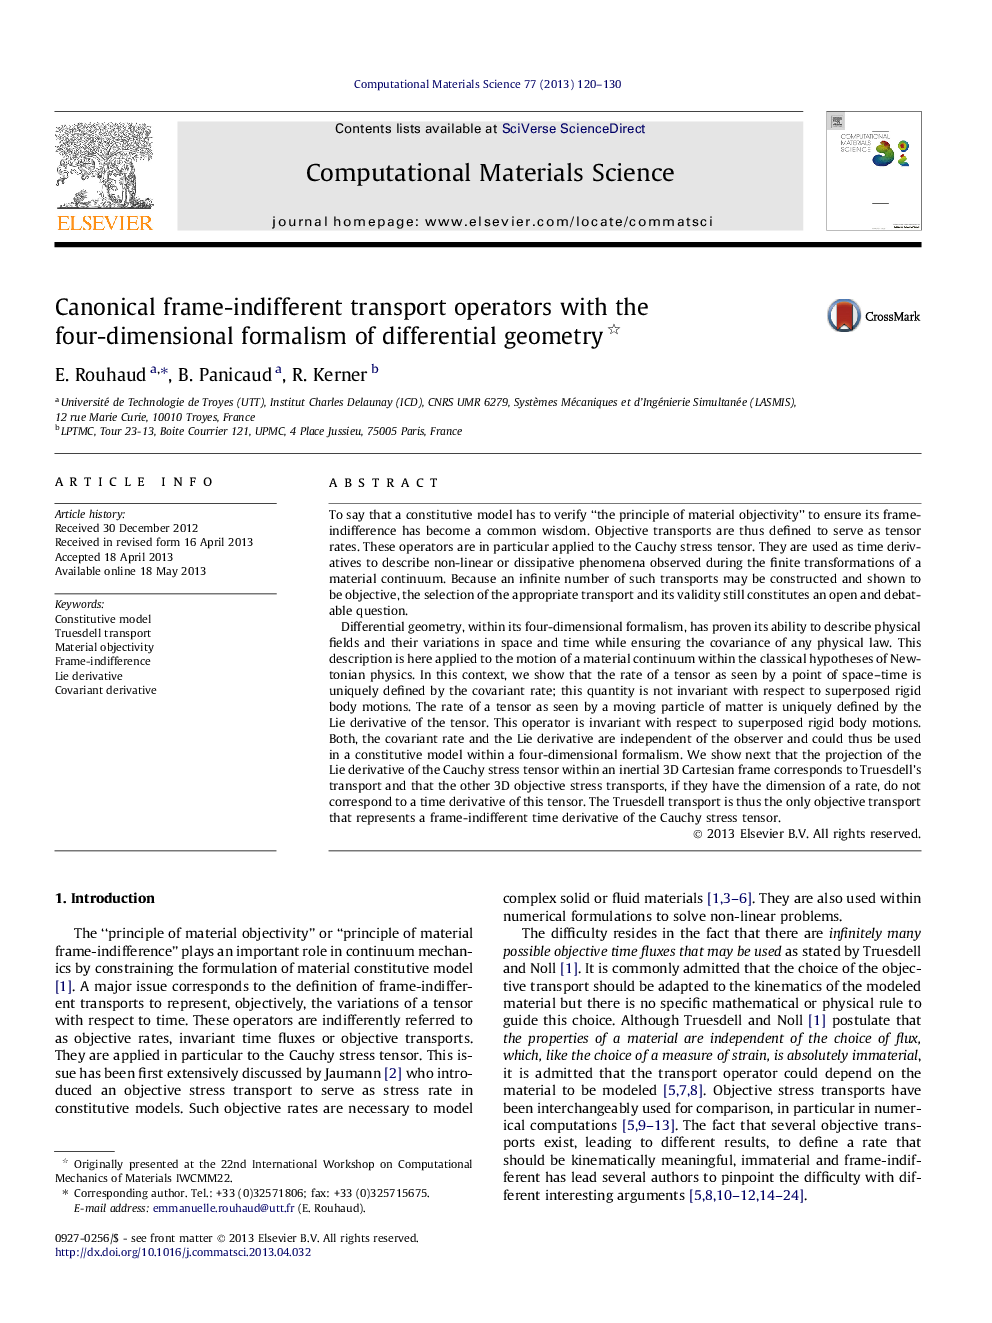 اپراتورهای حمل و نقل هندسفری کاننیکر با فرمول چهار بعدی هندسه دیفرانسیل 